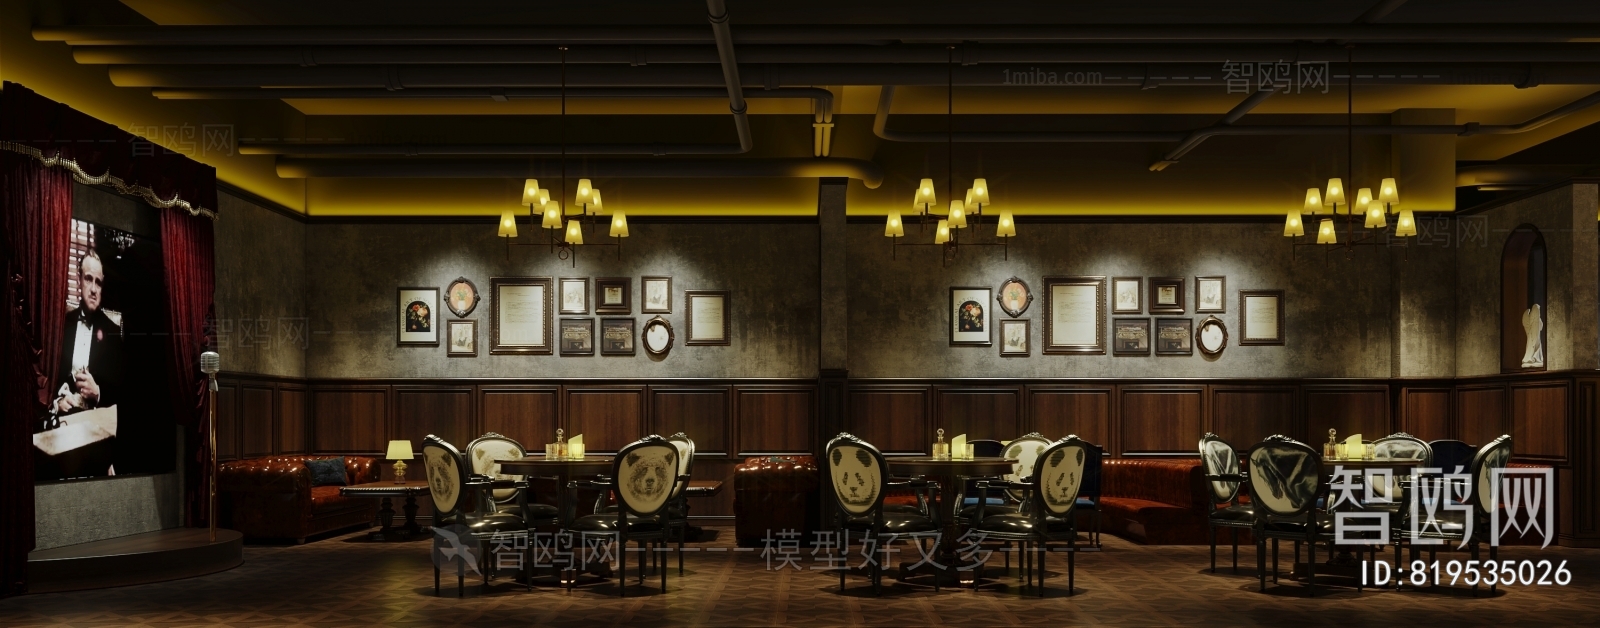 美式酒吧3D模型下载